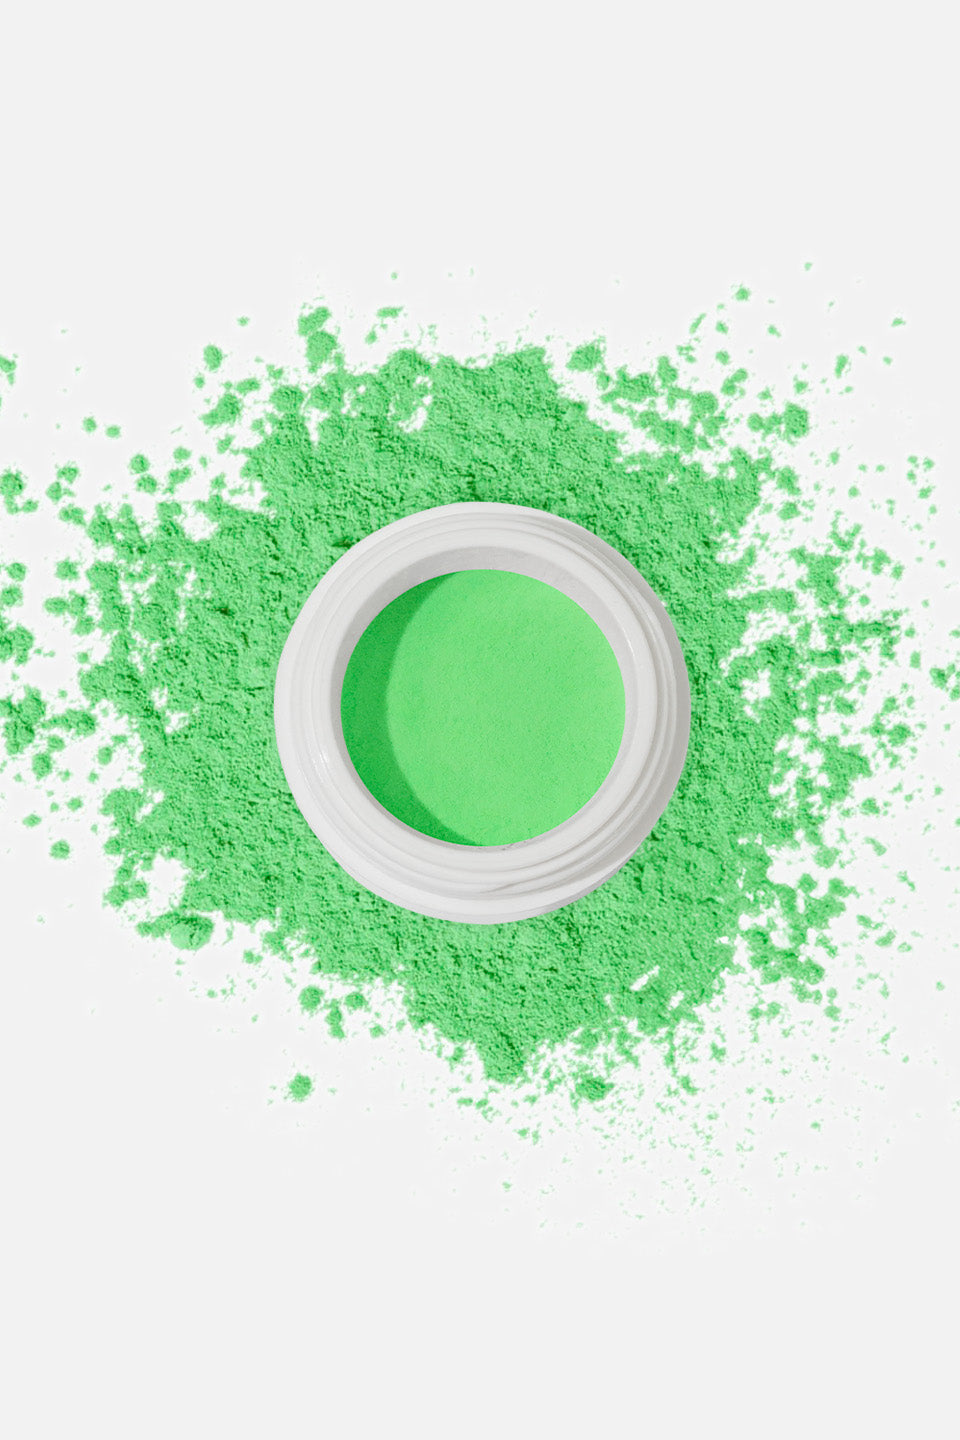 Polvere acrilica verde neon 5 g